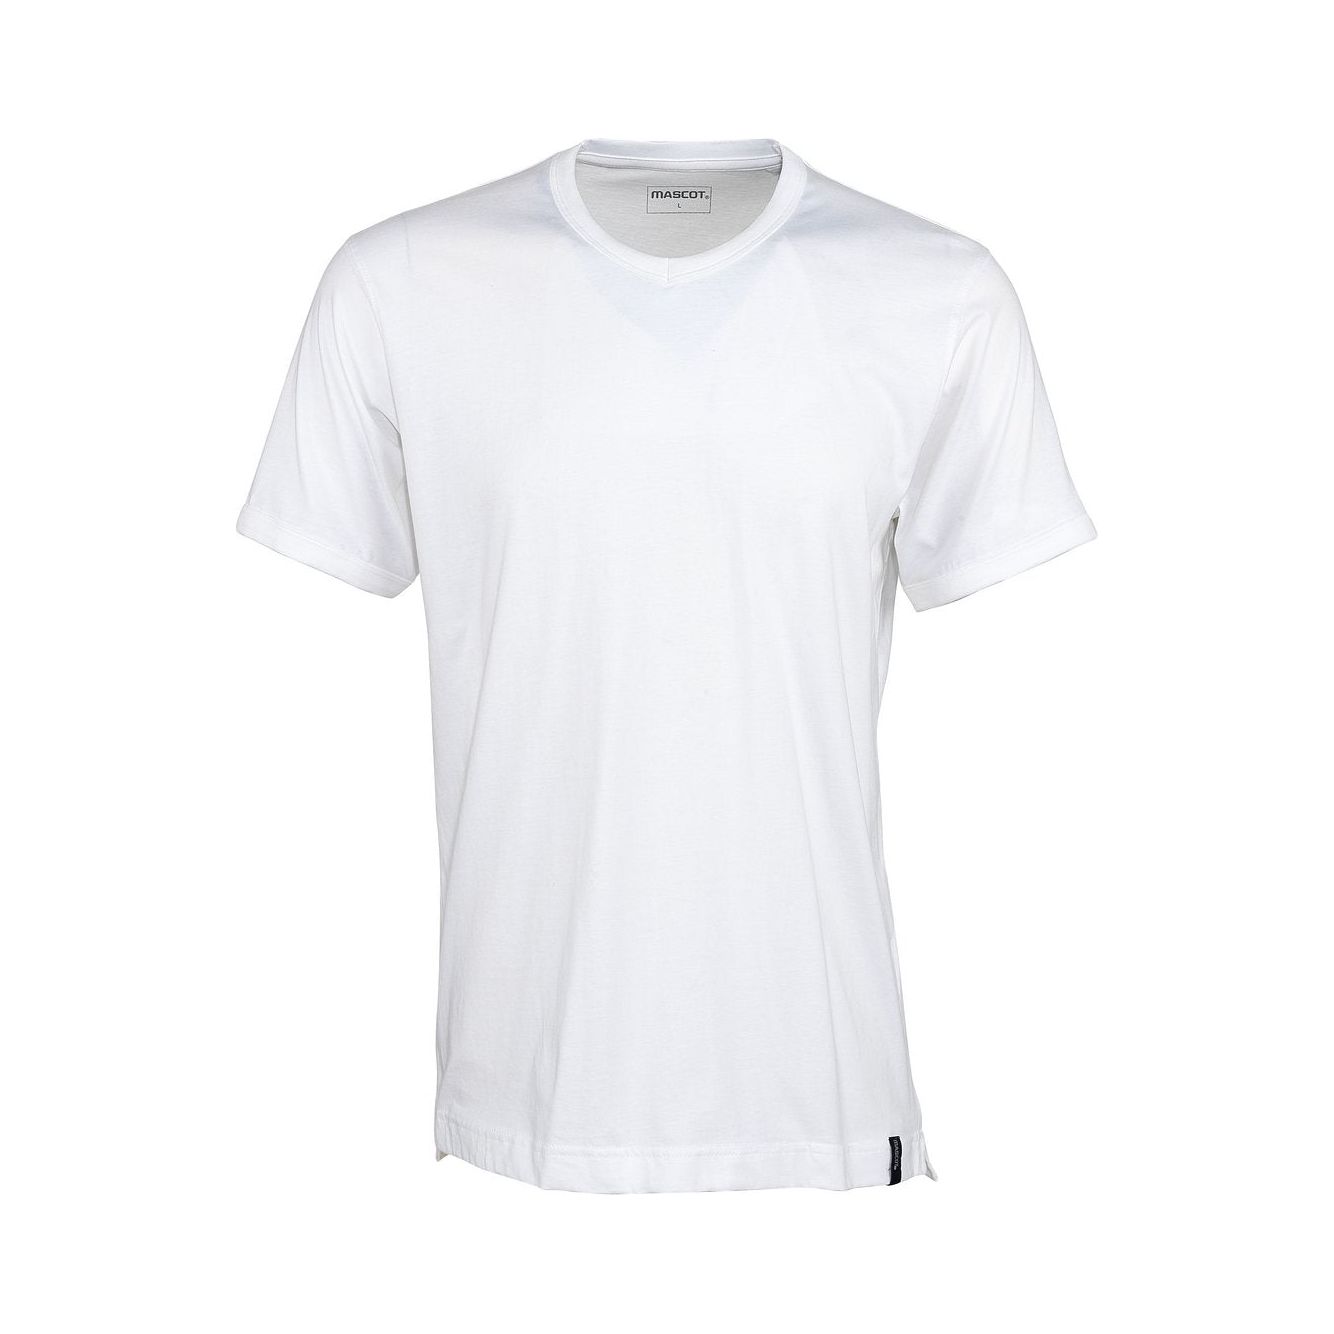 Mascot Algoso T-shirt V-Neck White 50415-250-06 Front